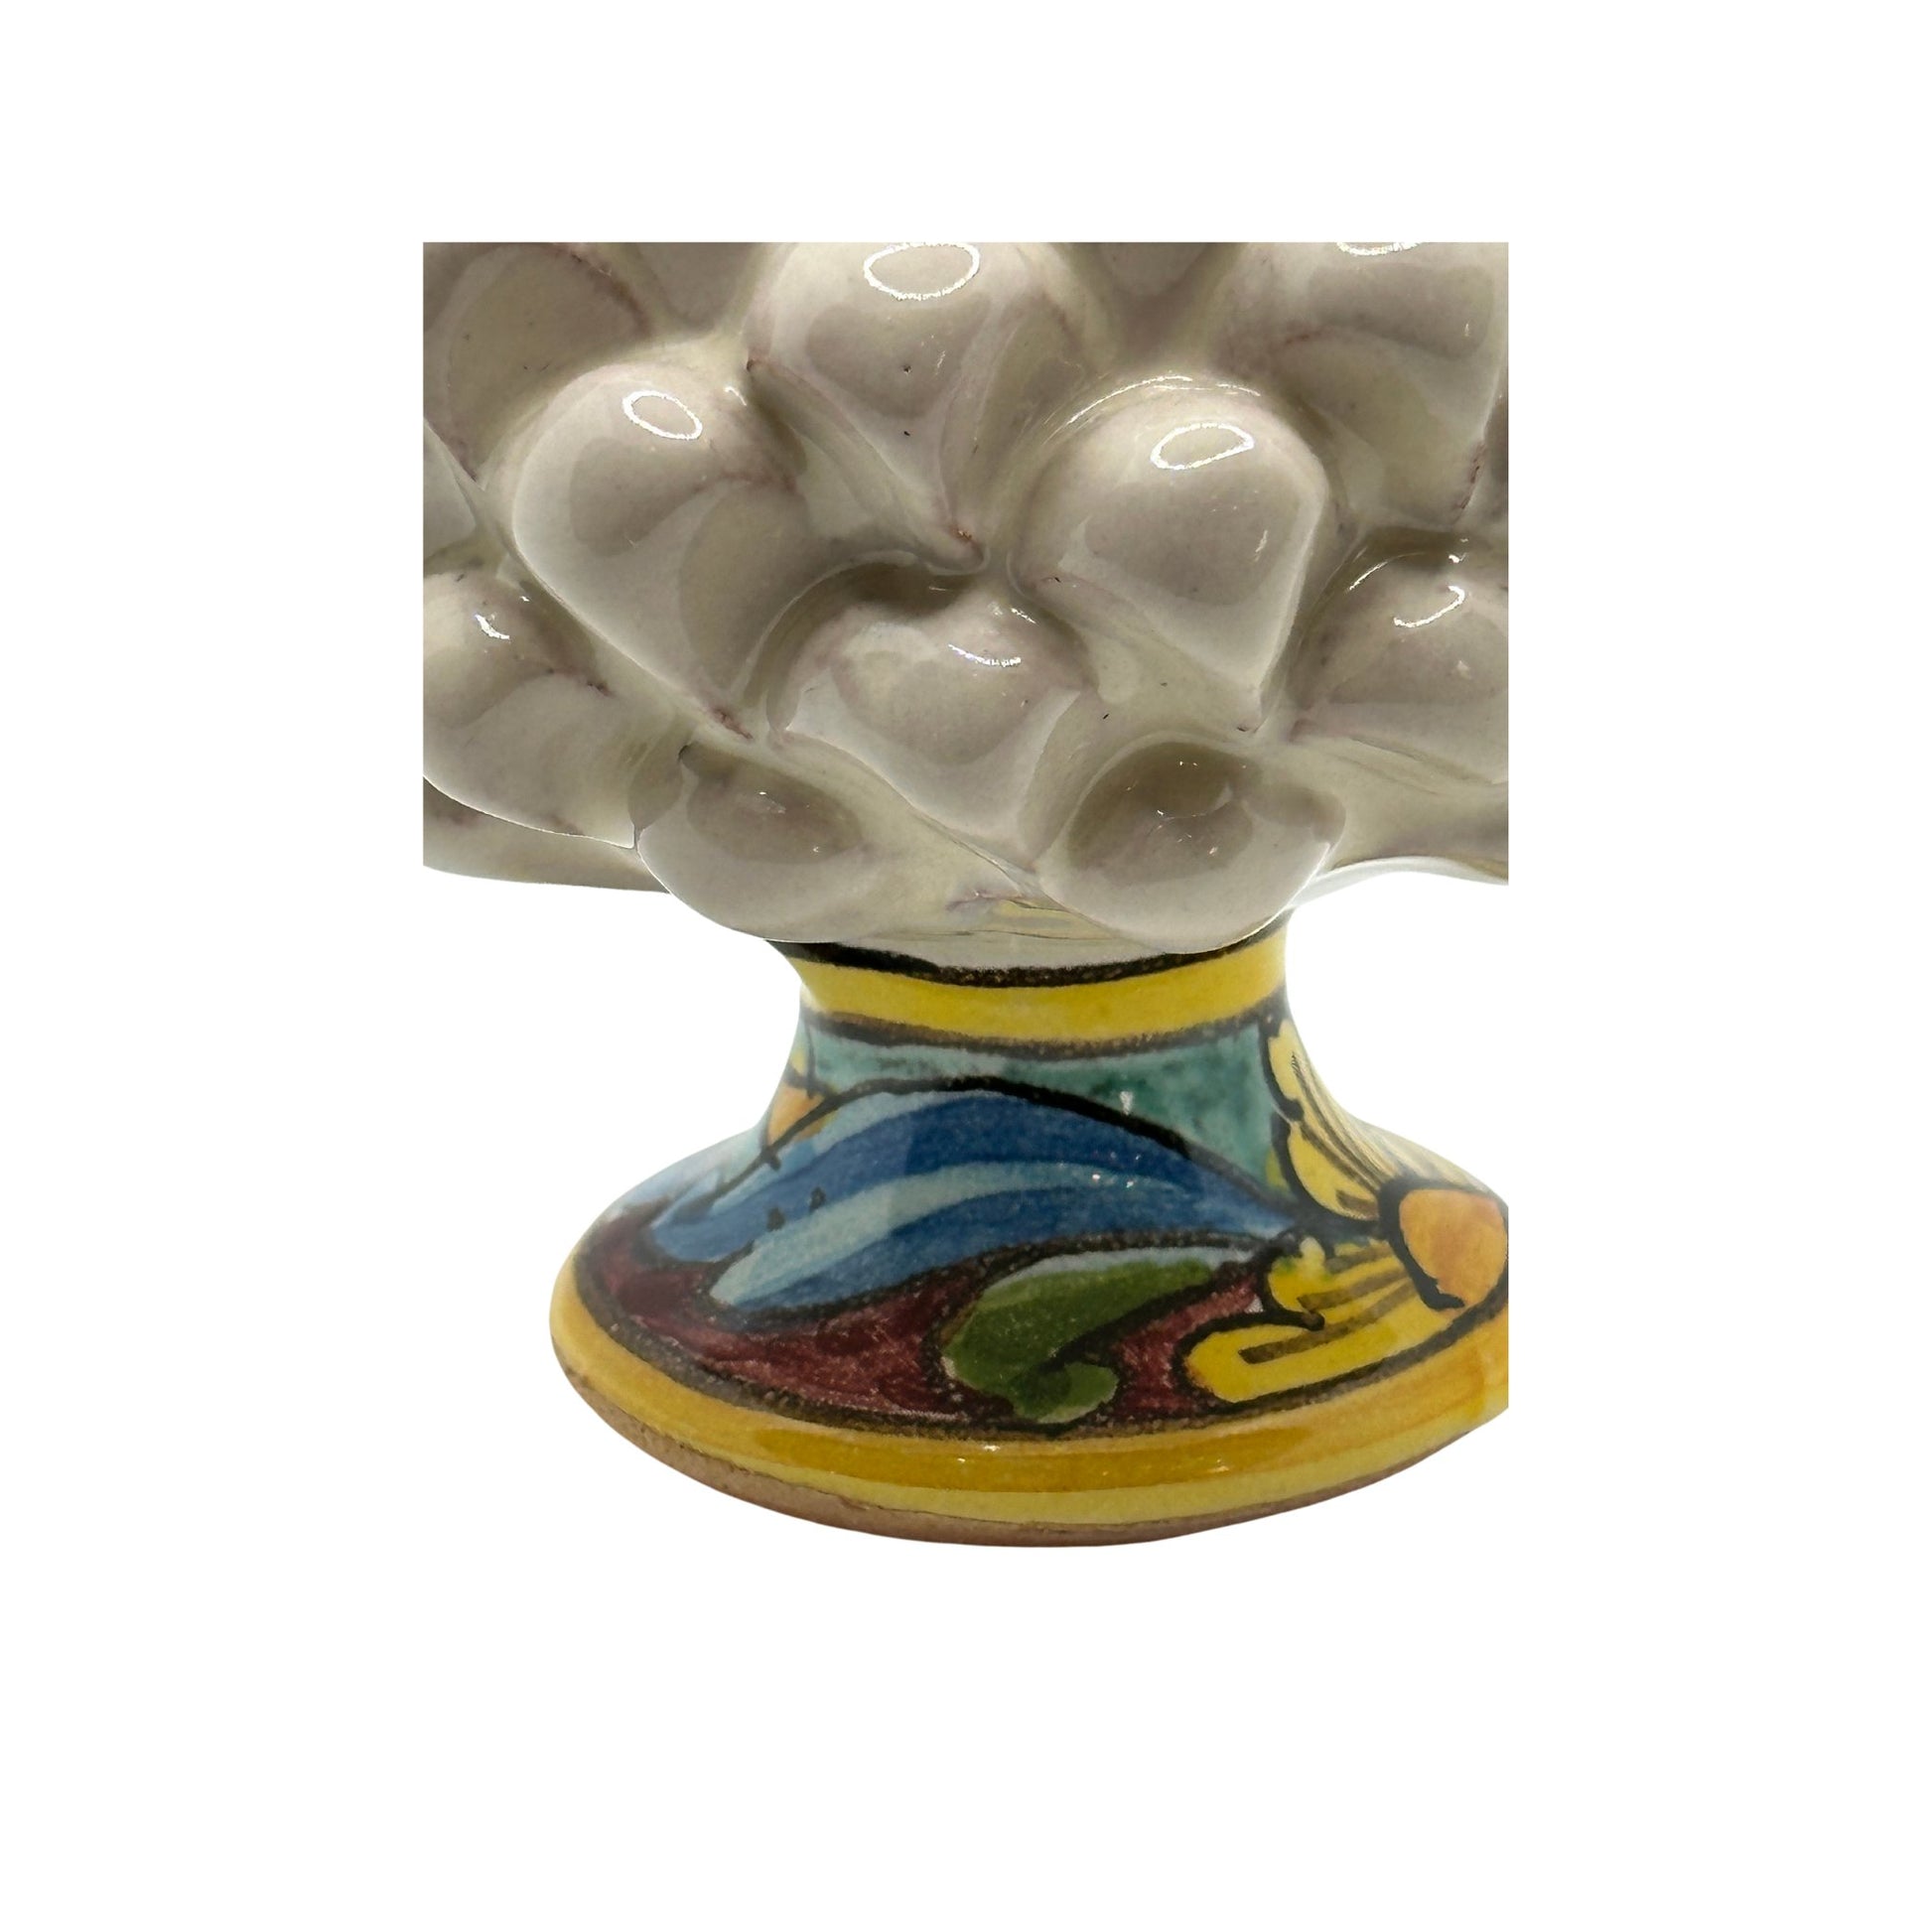 Pigna siciliana artigianale con decori, Santo Stefano di Camastra - Ceramiche artigianali Santo Stefano di Camastra - Maravigghia for Sicily